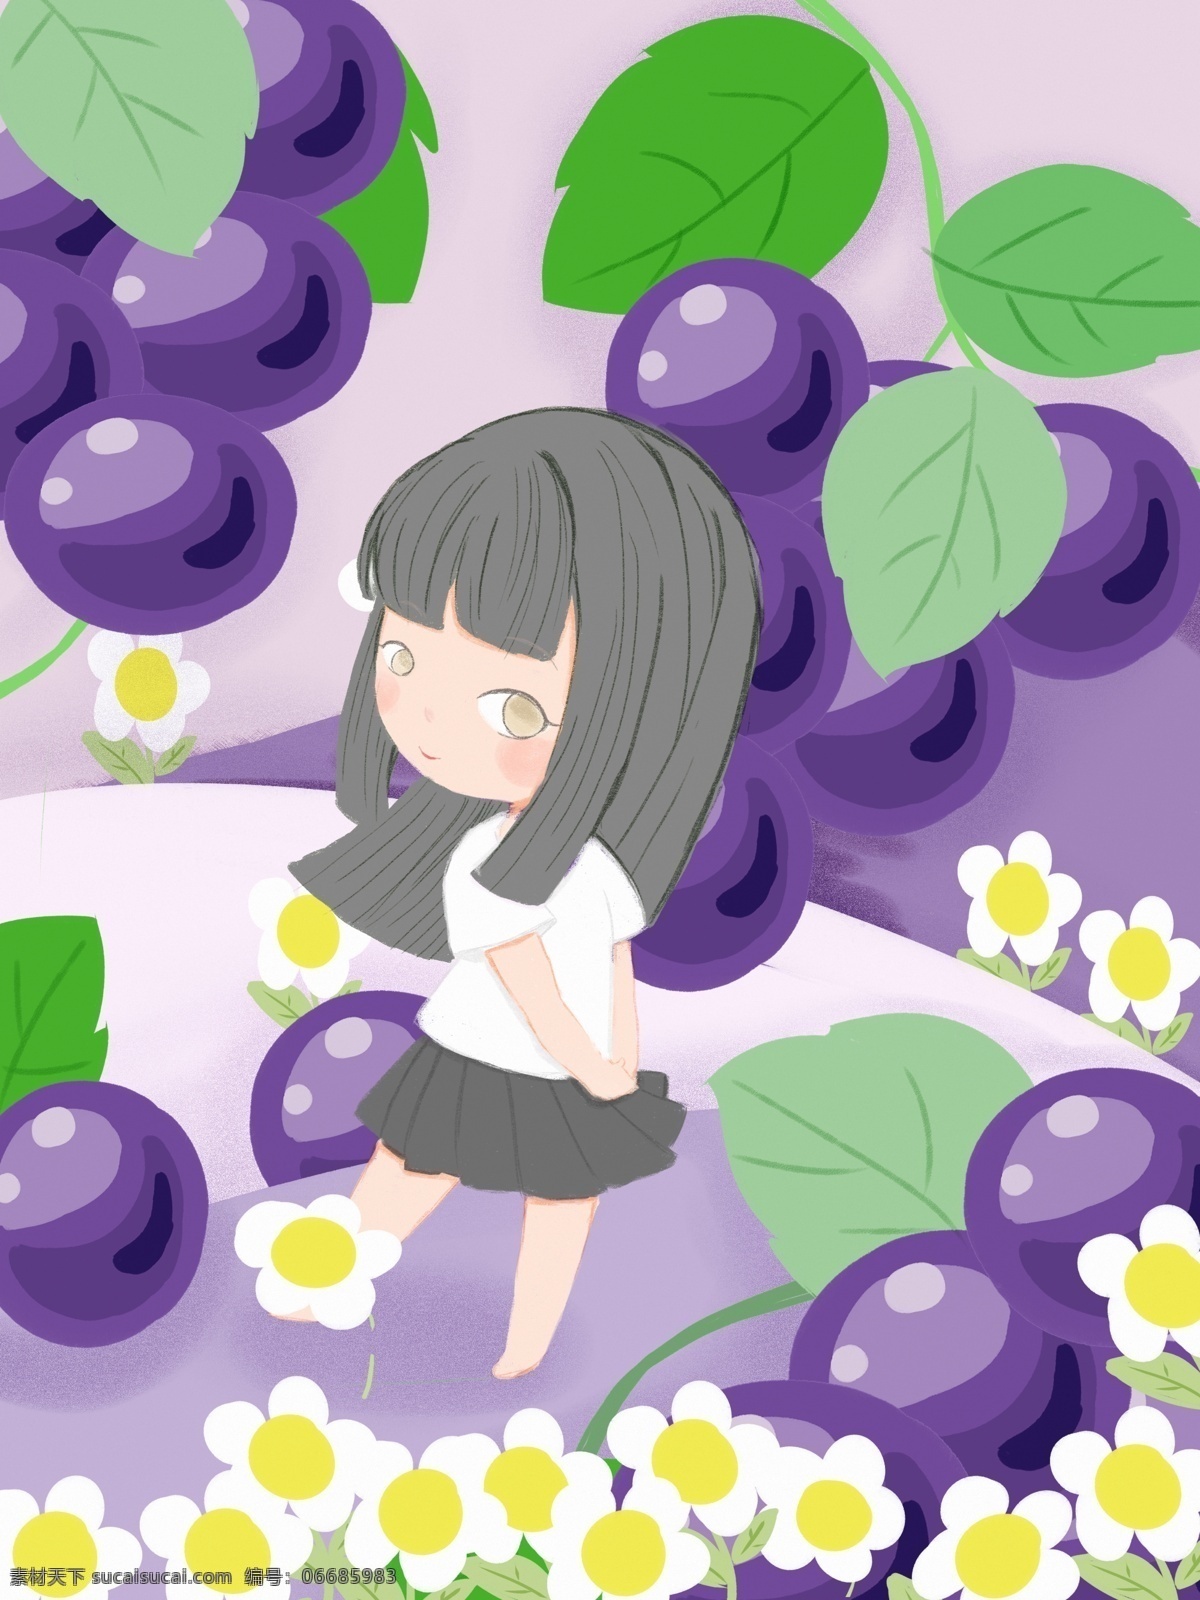 原创 少女 心 水果 插画 葡萄 从中 漫步 女孩 花朵 绿色 创意 梦幻 紫色 山坡 少女心 清新